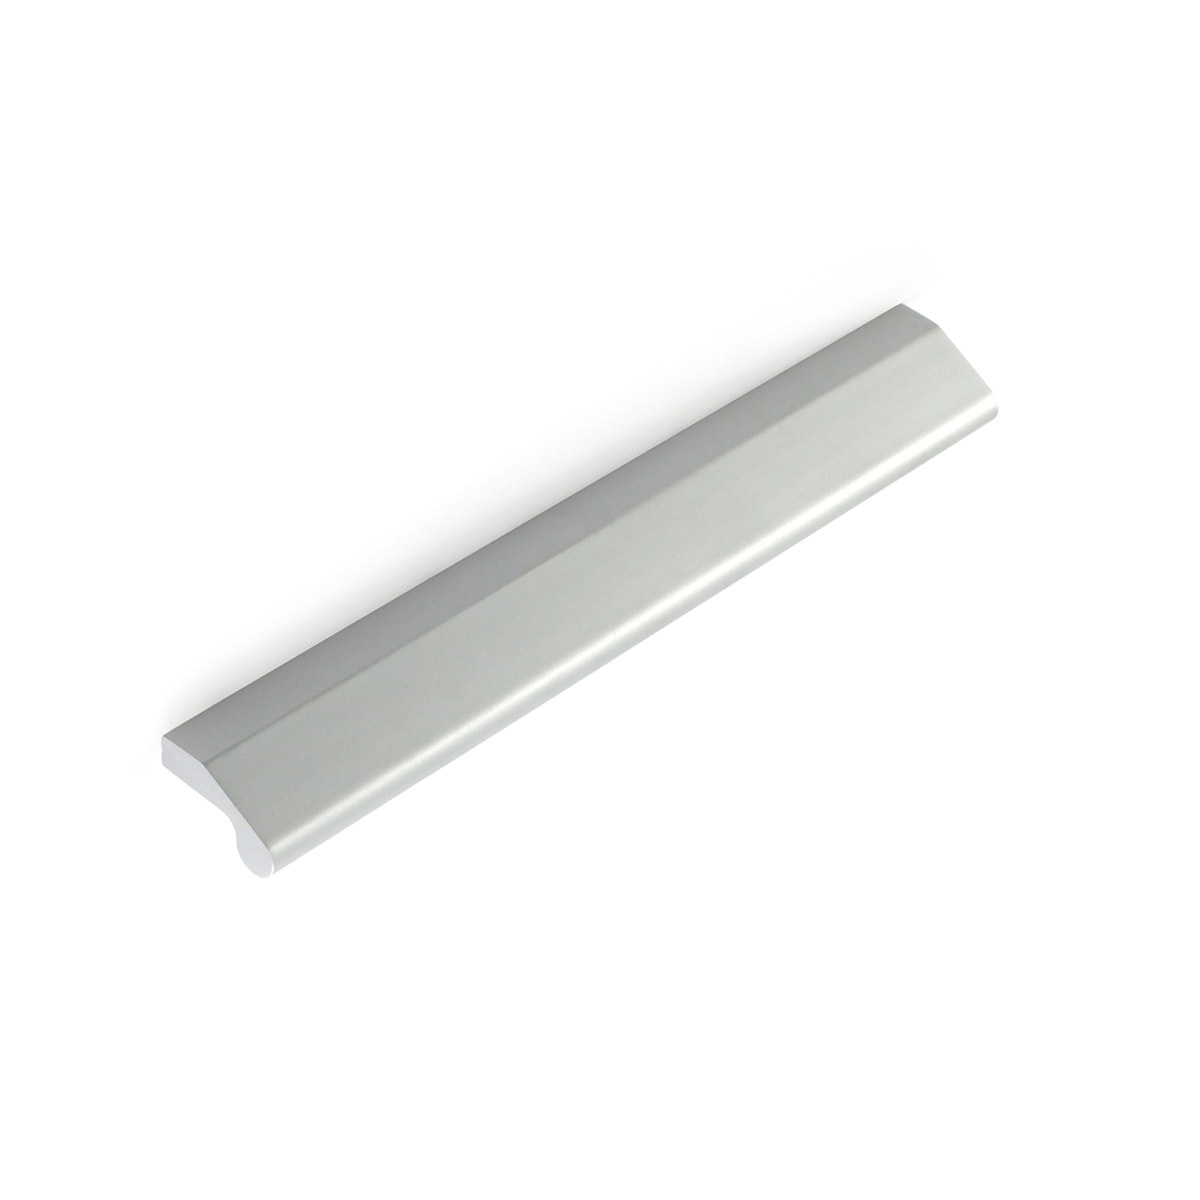 Asa de aluminio con acabado anodizado mate, dimensiones:190x15x26mm y entrepuntos:160mm